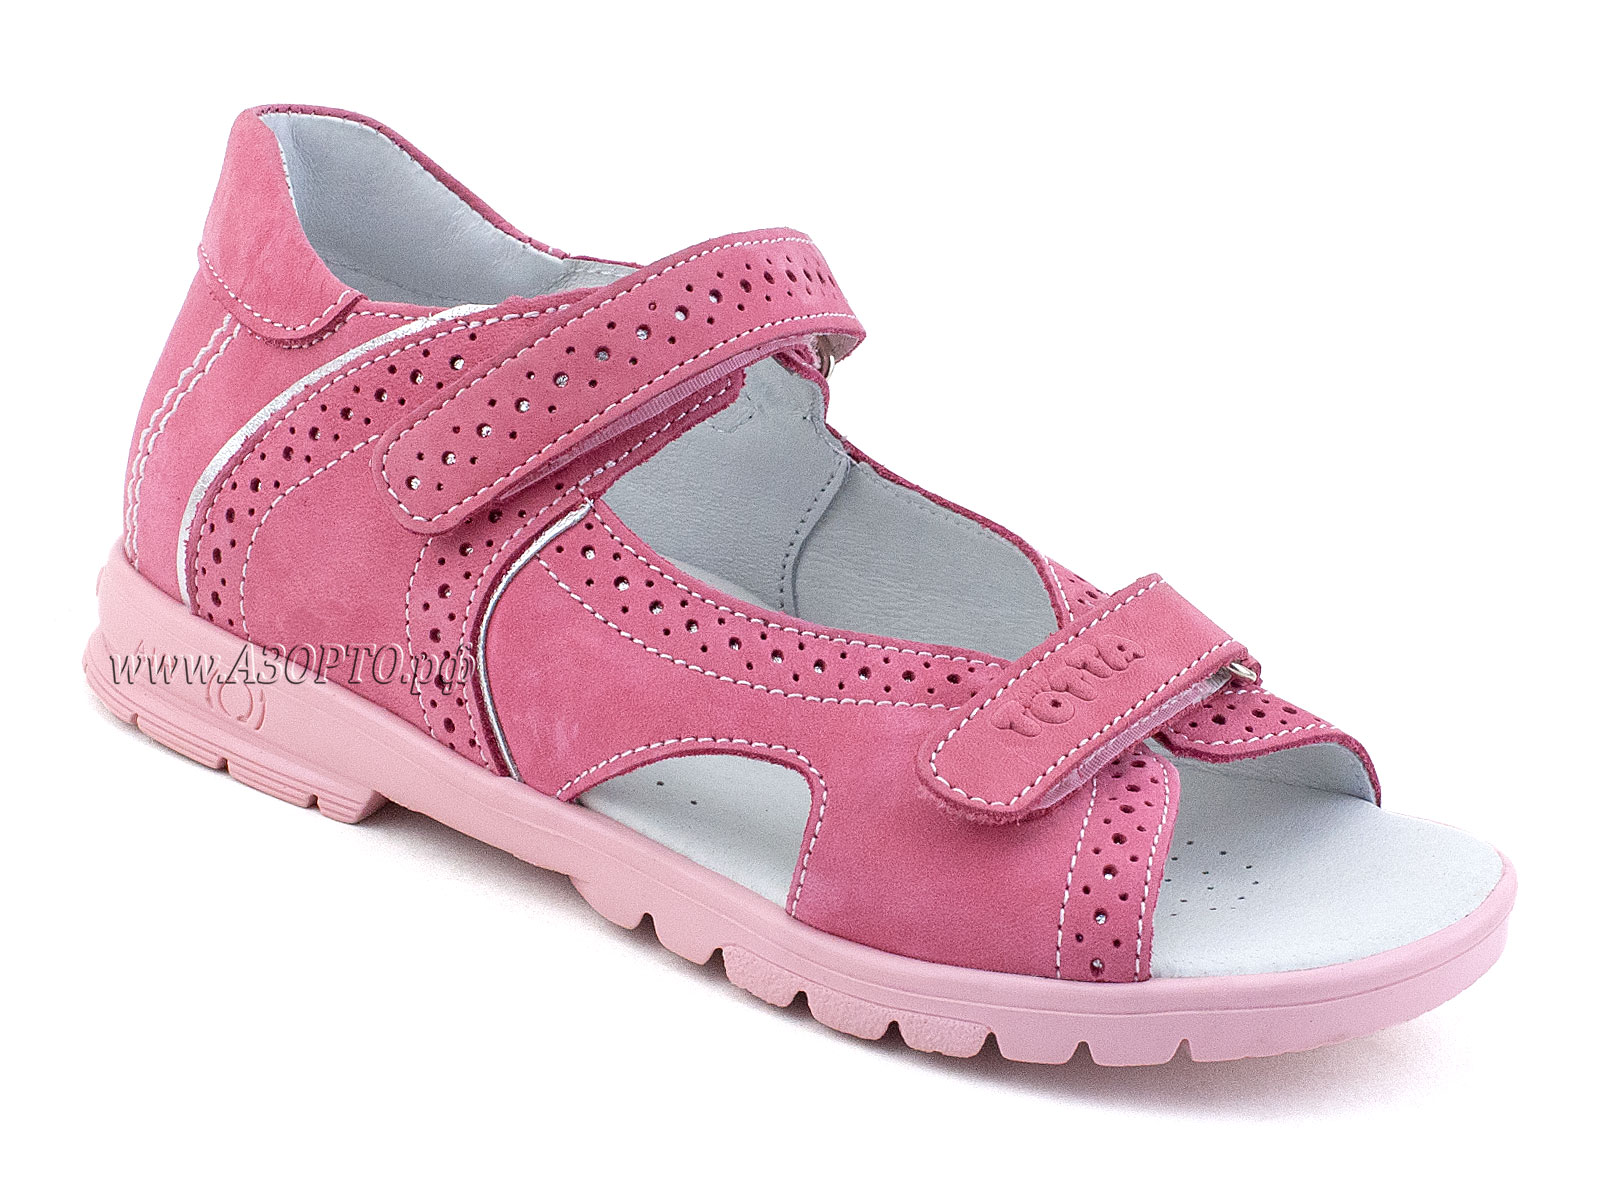 10216-87,022 Тотто (Totto), сандалии детские открытые ортопедические профилактические, нубук, розовый.